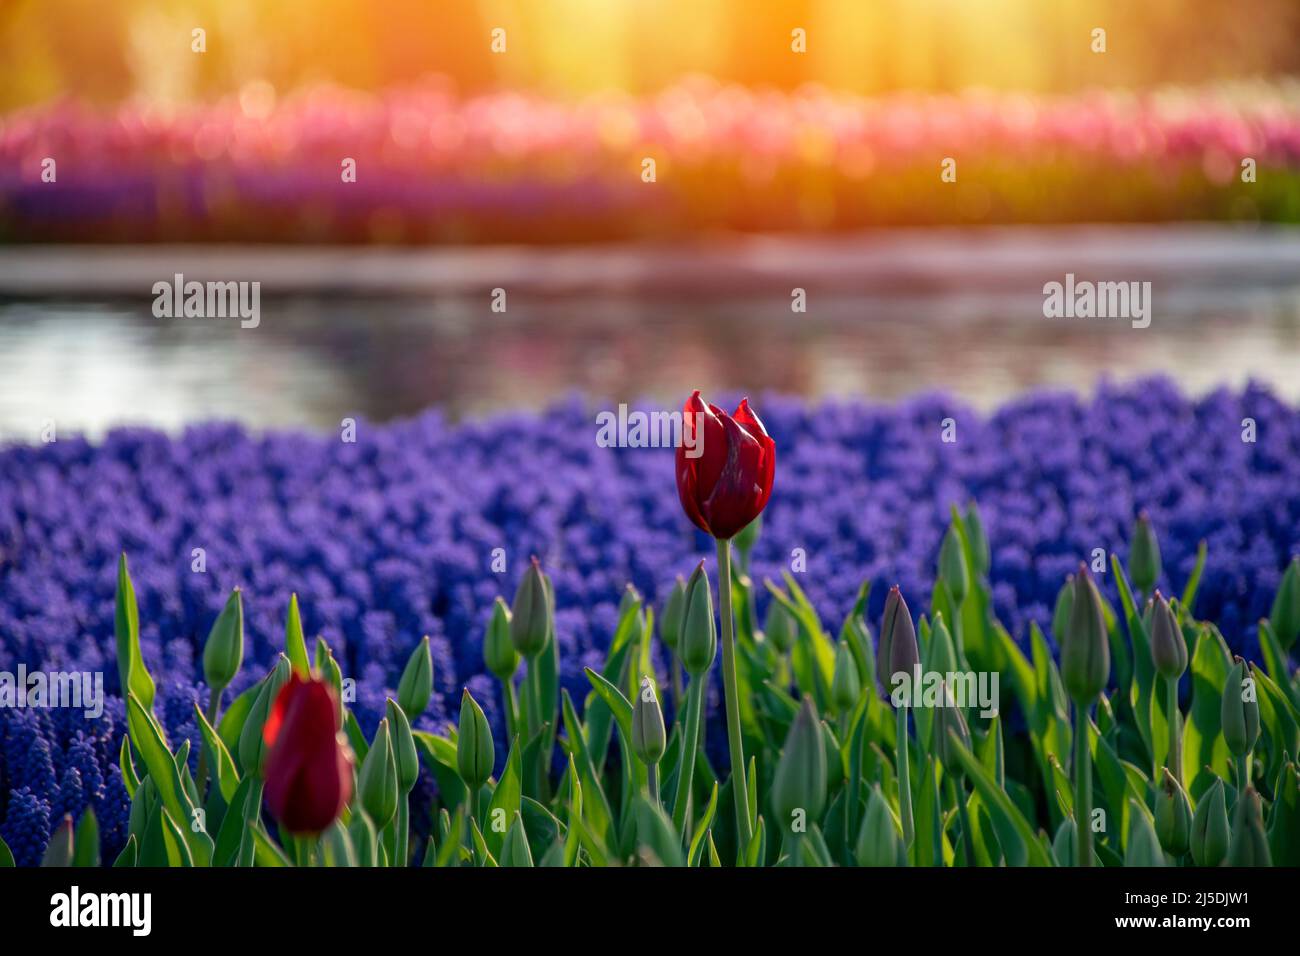 Rote Tulpe, die von Sonnenlicht beleuchtet wird. Verschwommene Hyazinthe-Blüten hinter roten Tulpen. Helle bunte Tulpe Makro Foto Bild Hintergrund. Stockfoto